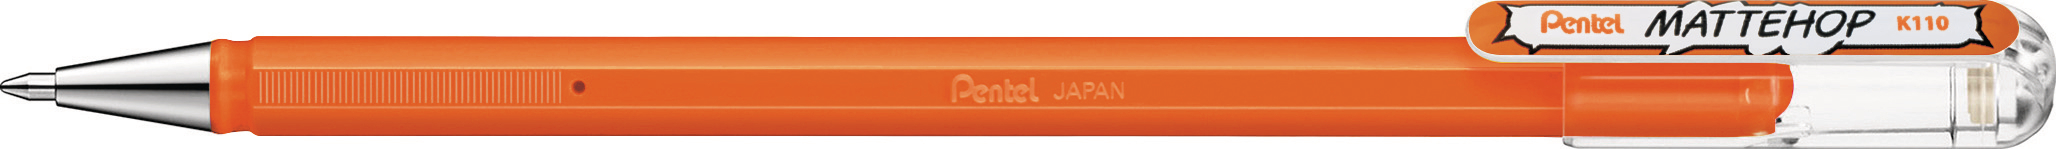 PENTEL Roller en gel Mattehop K110-VFX Mattehop orange